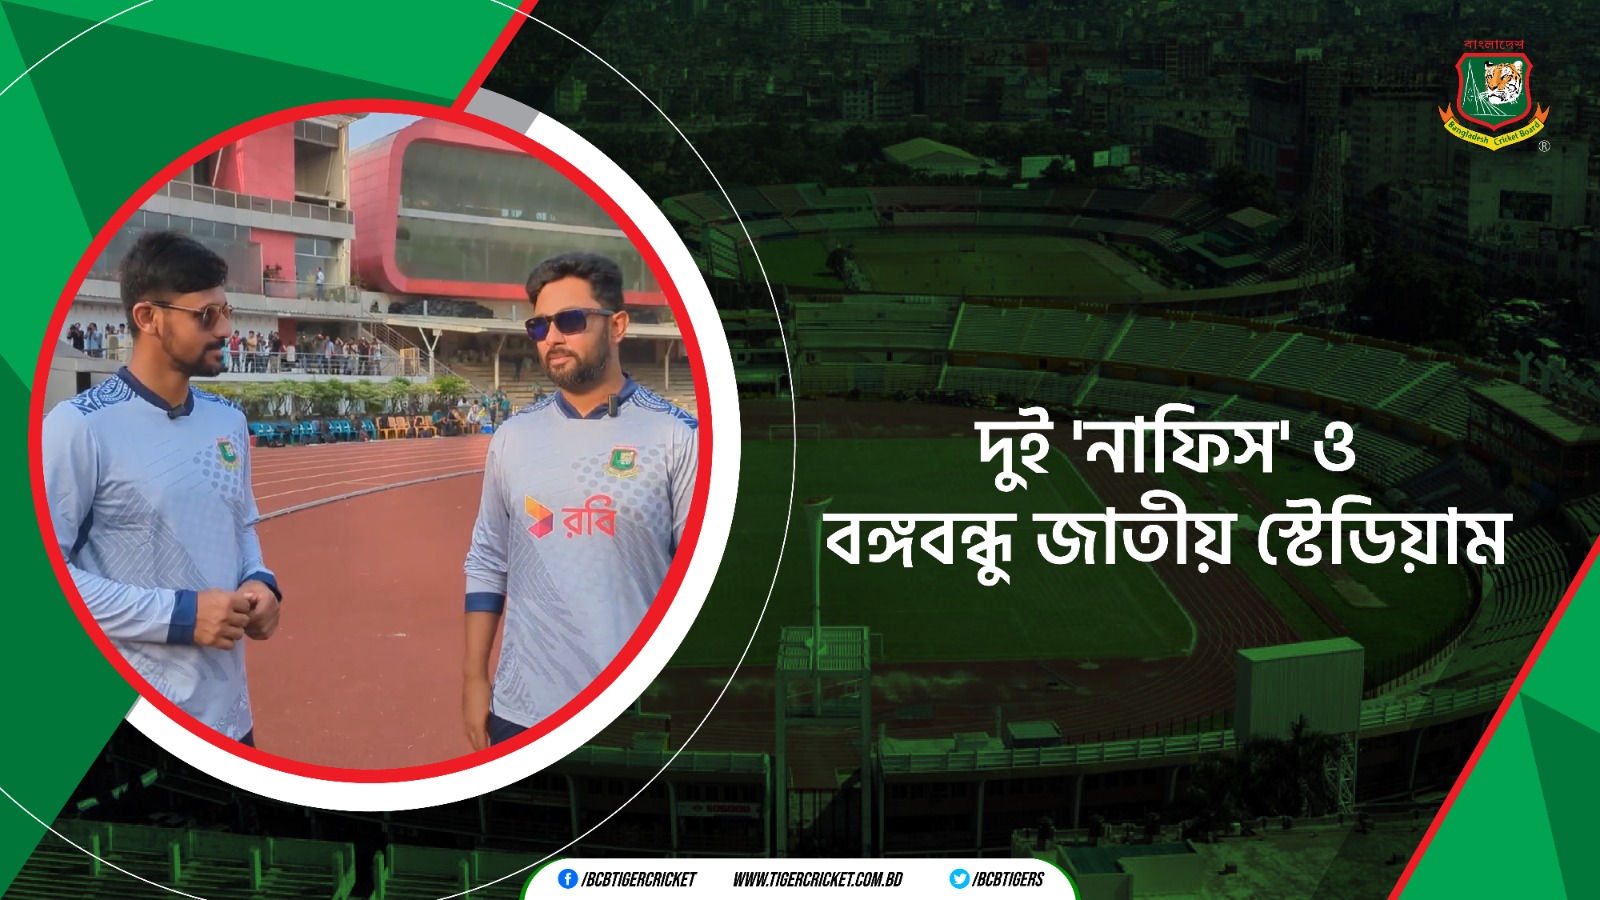 Bangabandhu National Stadium, the cradle of Bangladeshi cricket dreams, where the journey of Bangladesh Cricket commenced